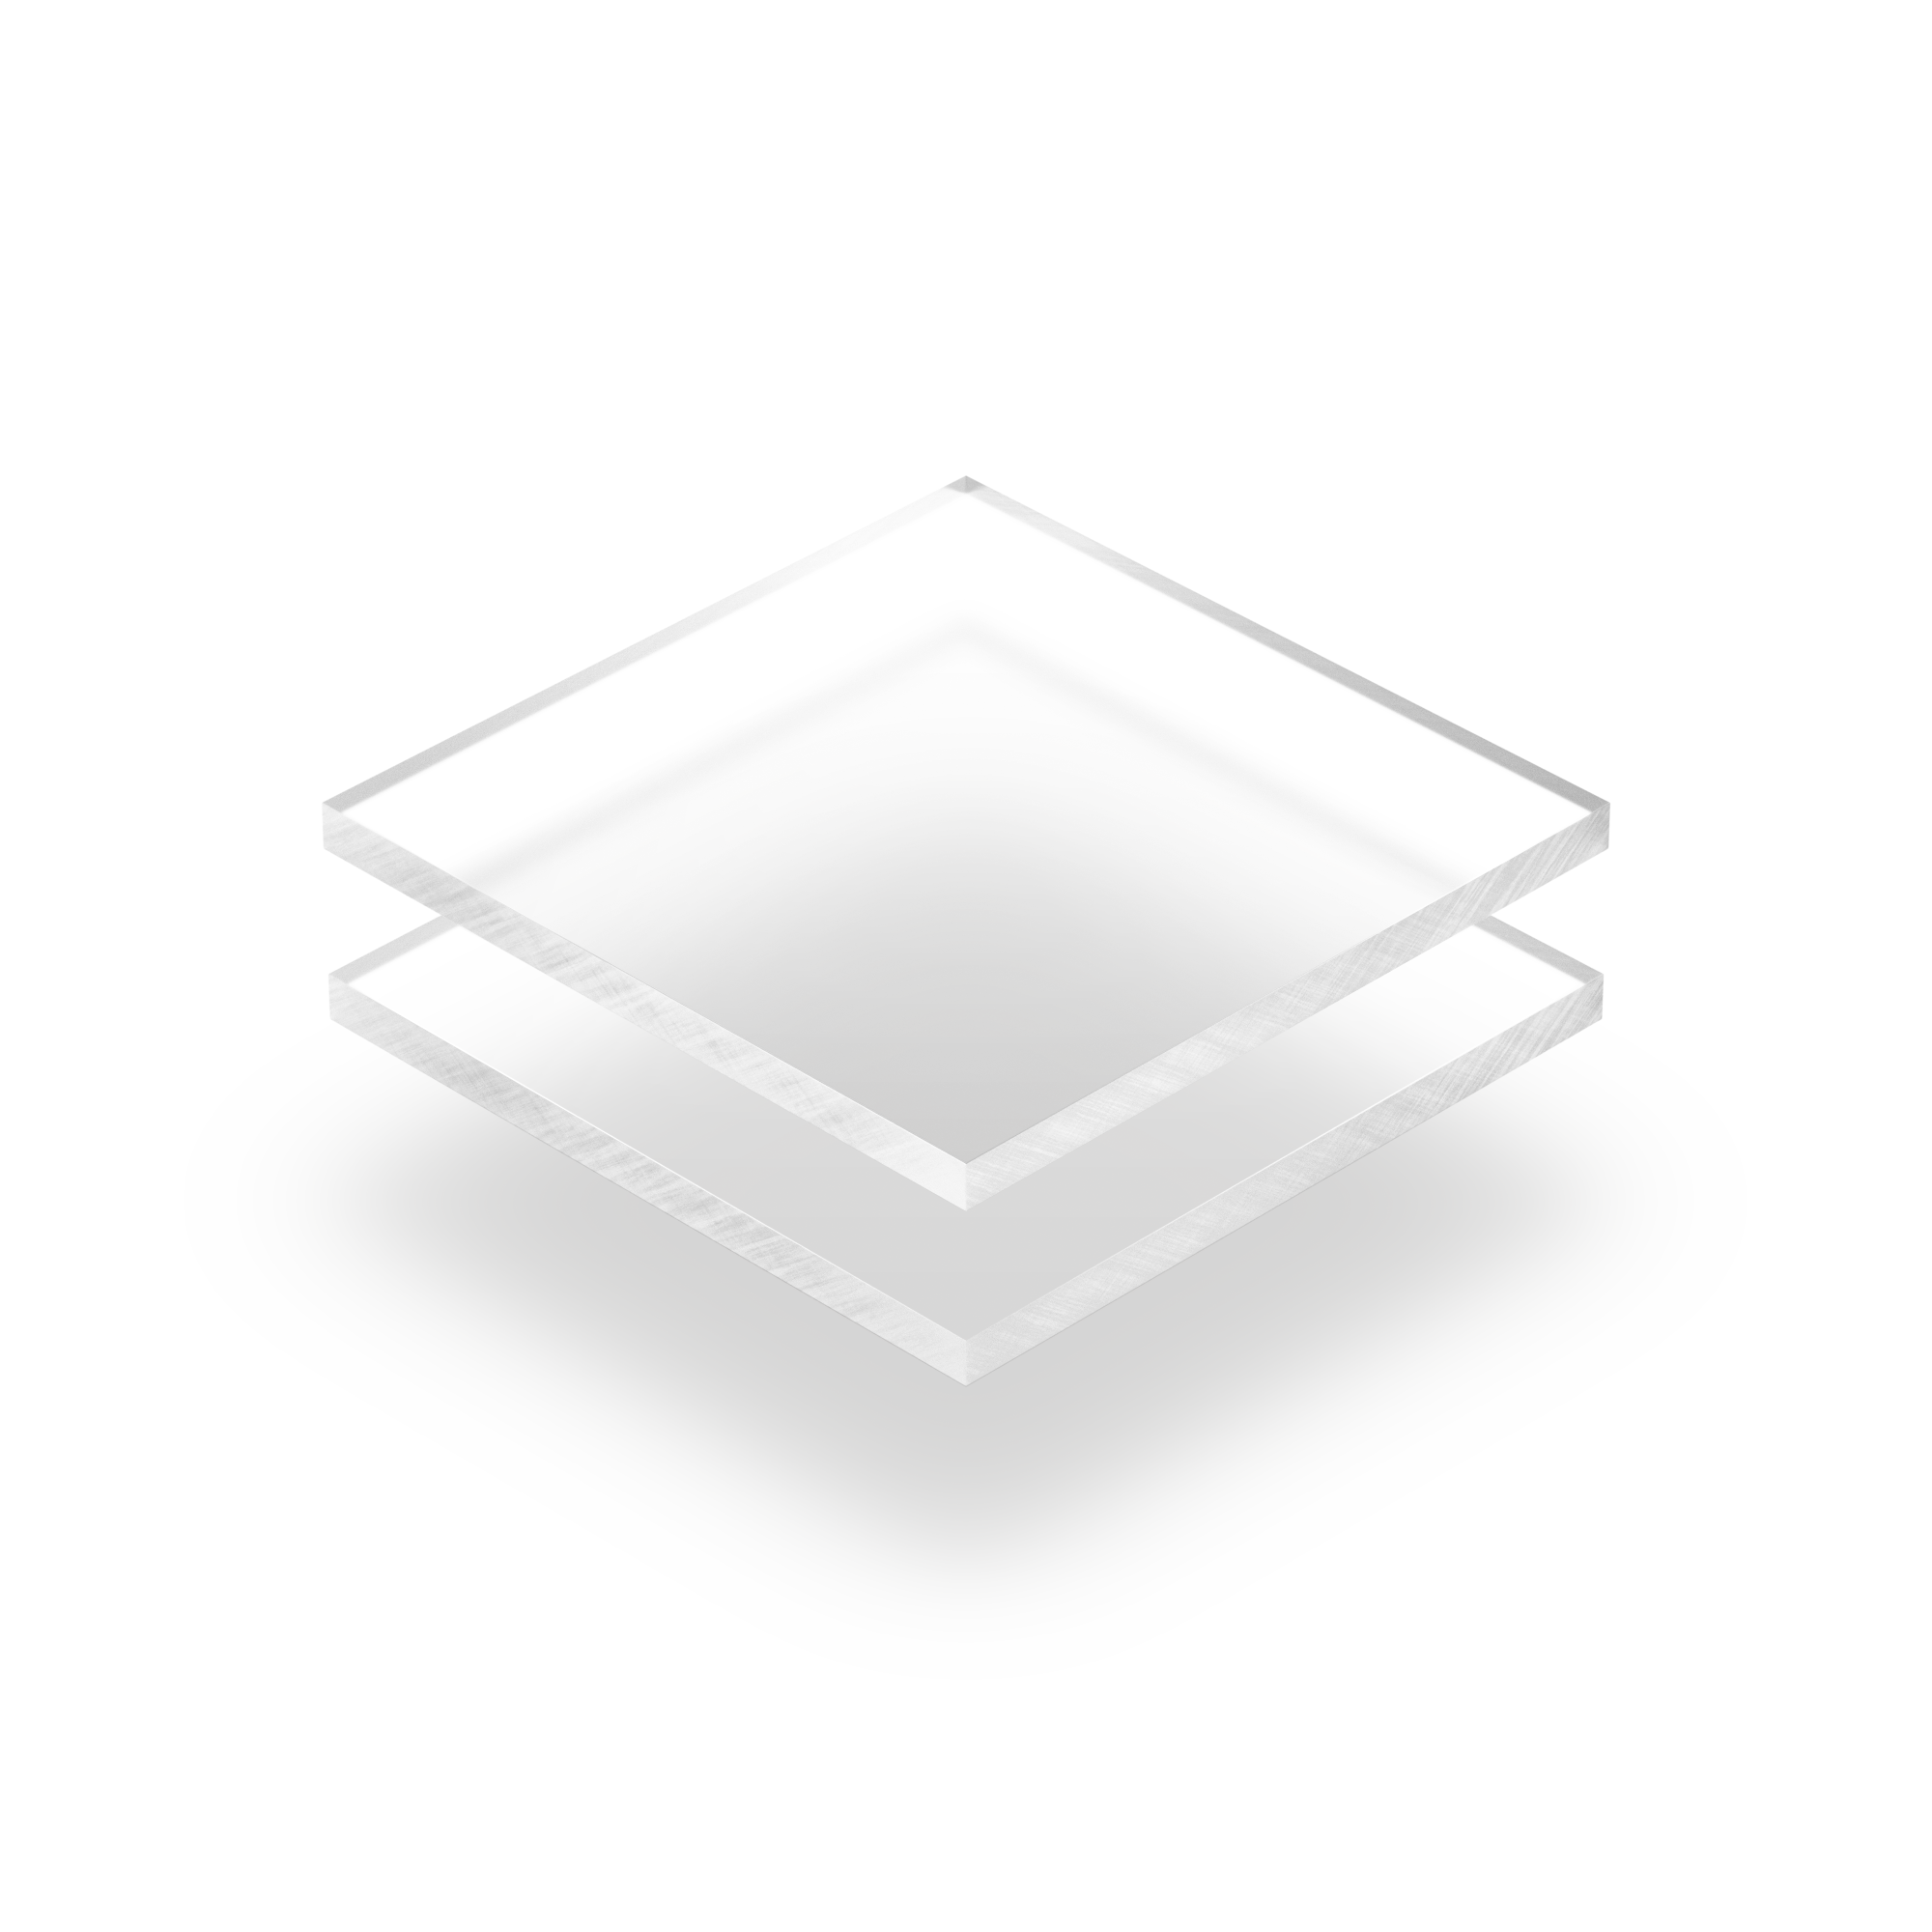 Plaque rond plexi couleur - plaque qr code plexiglass aspect givré